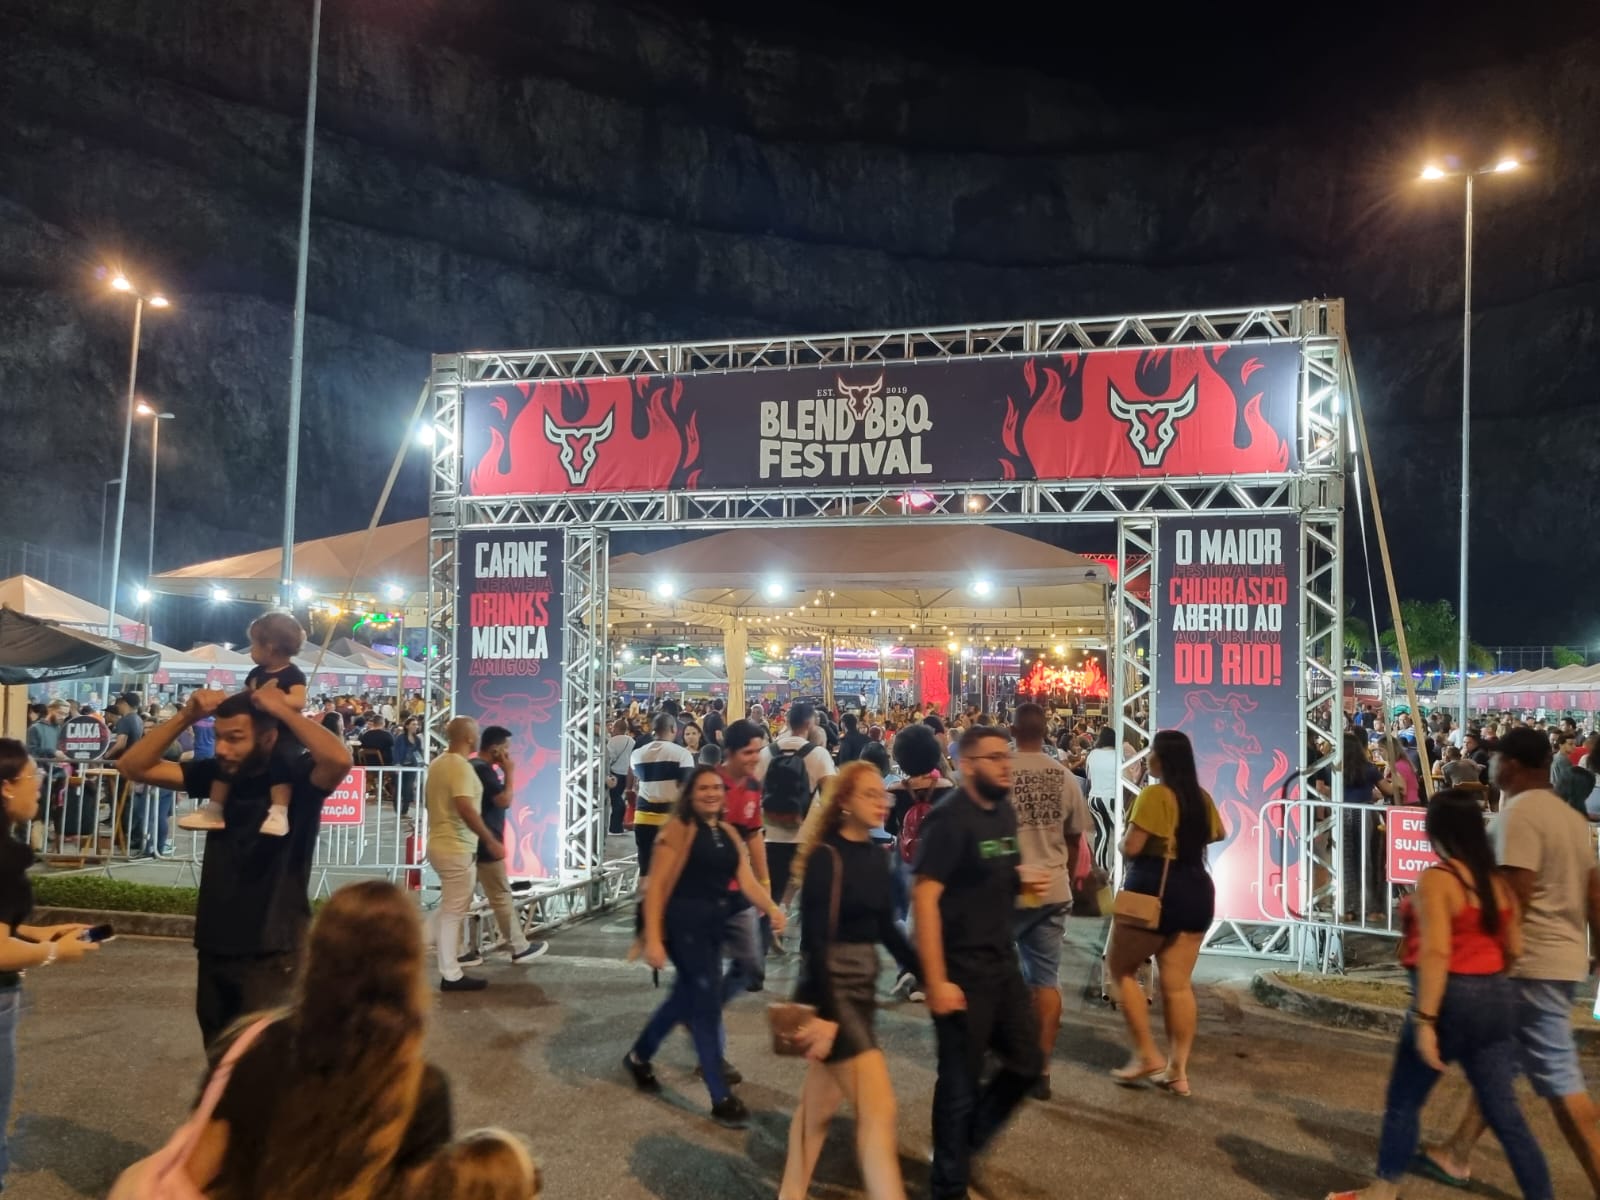 Shopping Nova Iguaçu recebe Blend BBQ Festival neste fim de semana